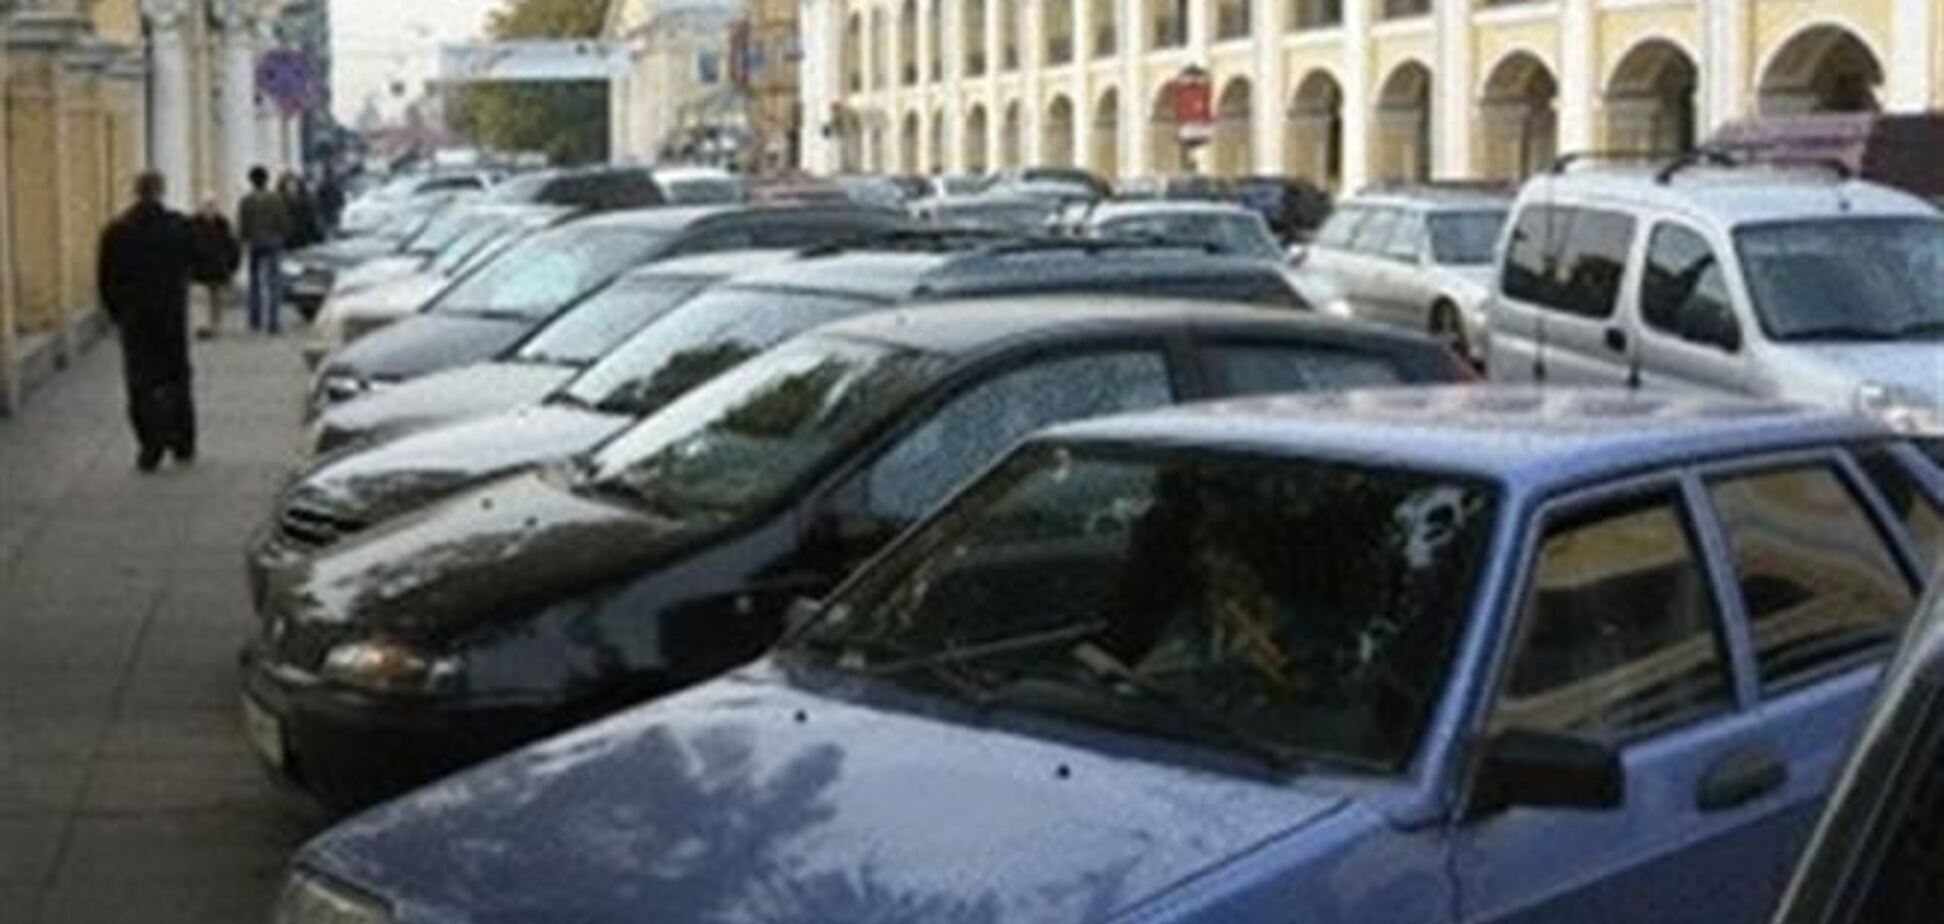 Незаконные киевские парковки приносят миллионные убытки - Кабмин